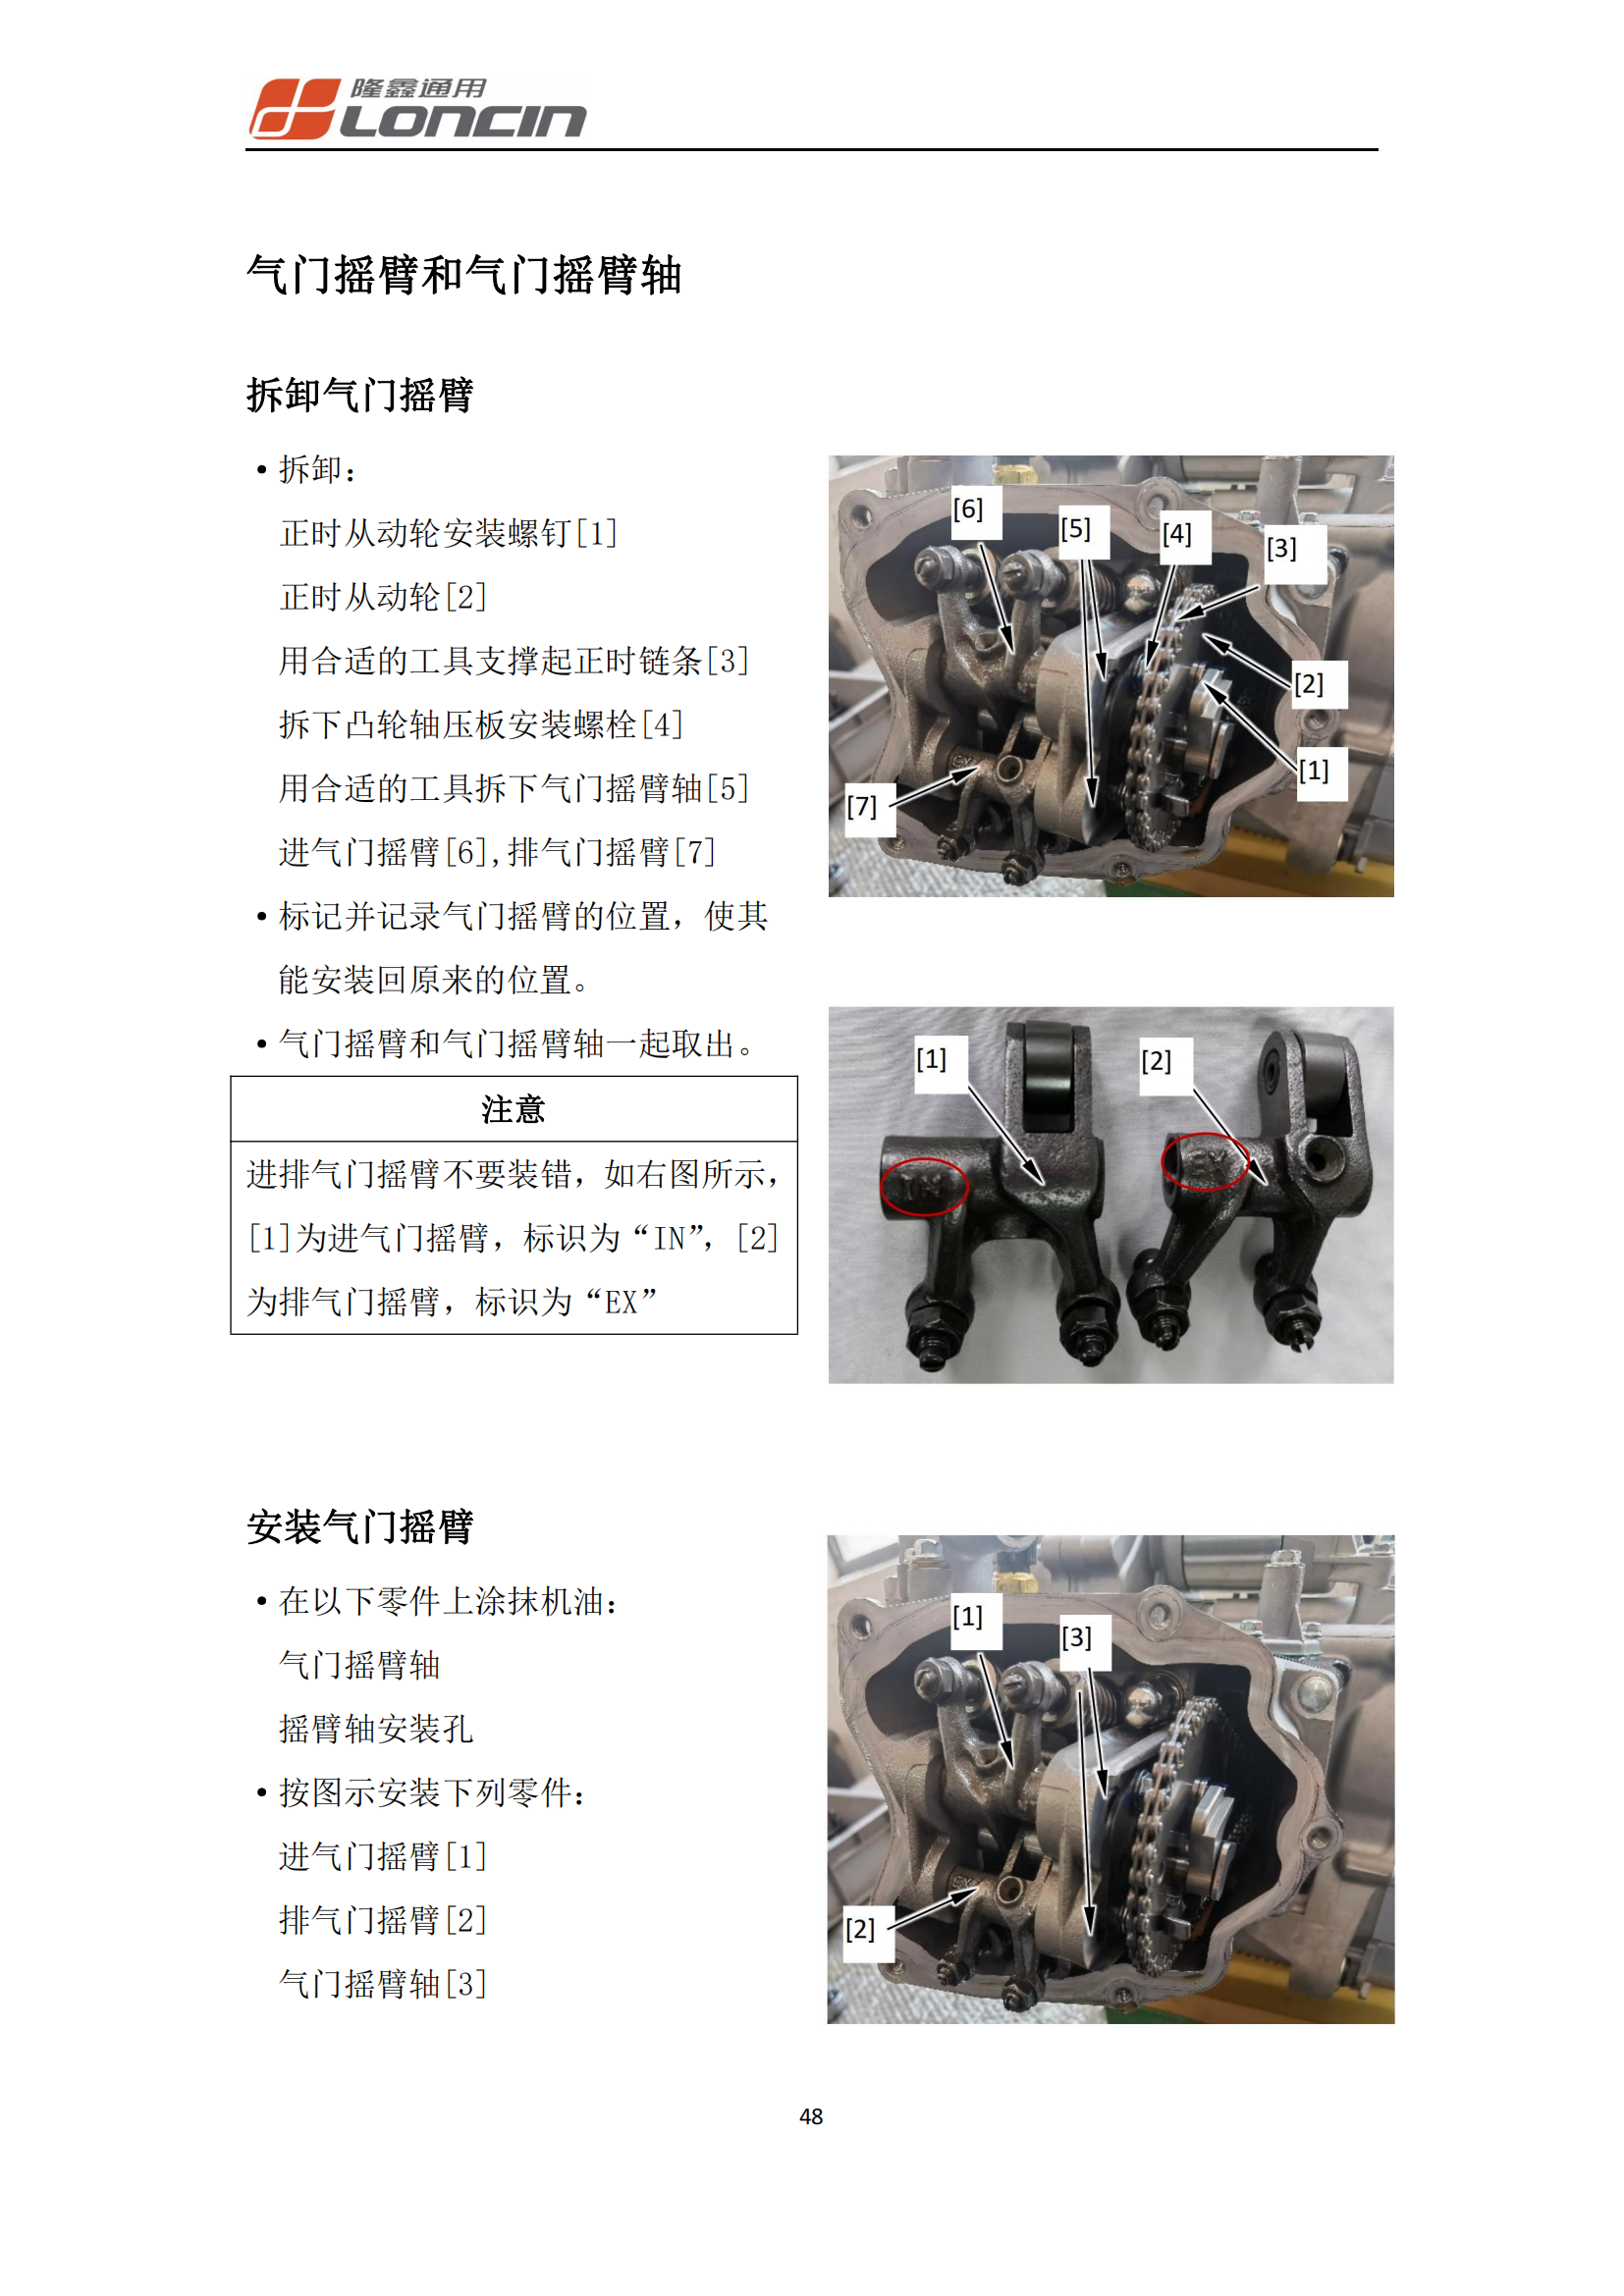 原版中文隆鑫无极SR250GT发动机KS250发动机维修手册插图4